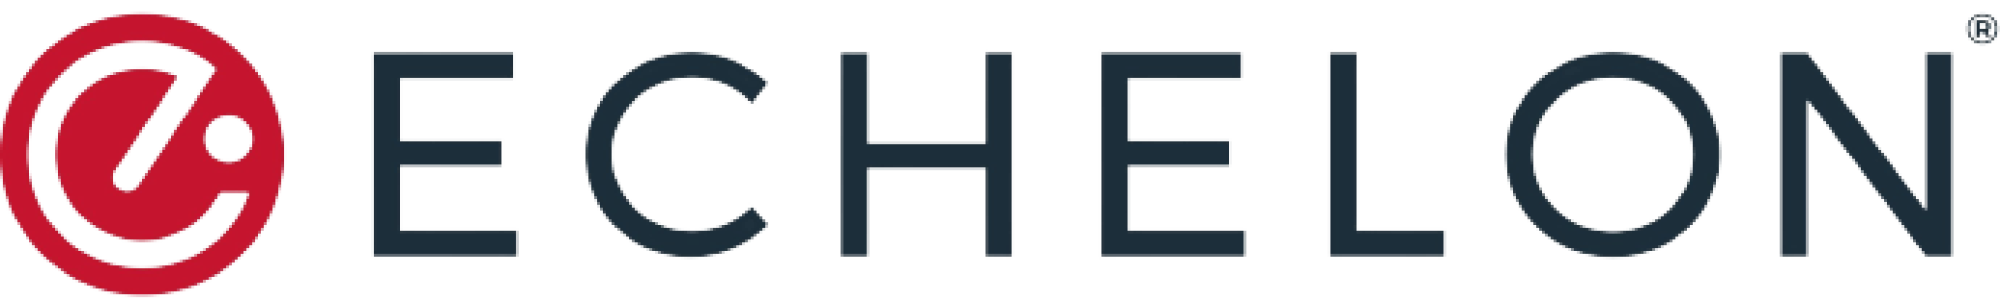 Echelon_Fit_Logo-removebg-preview